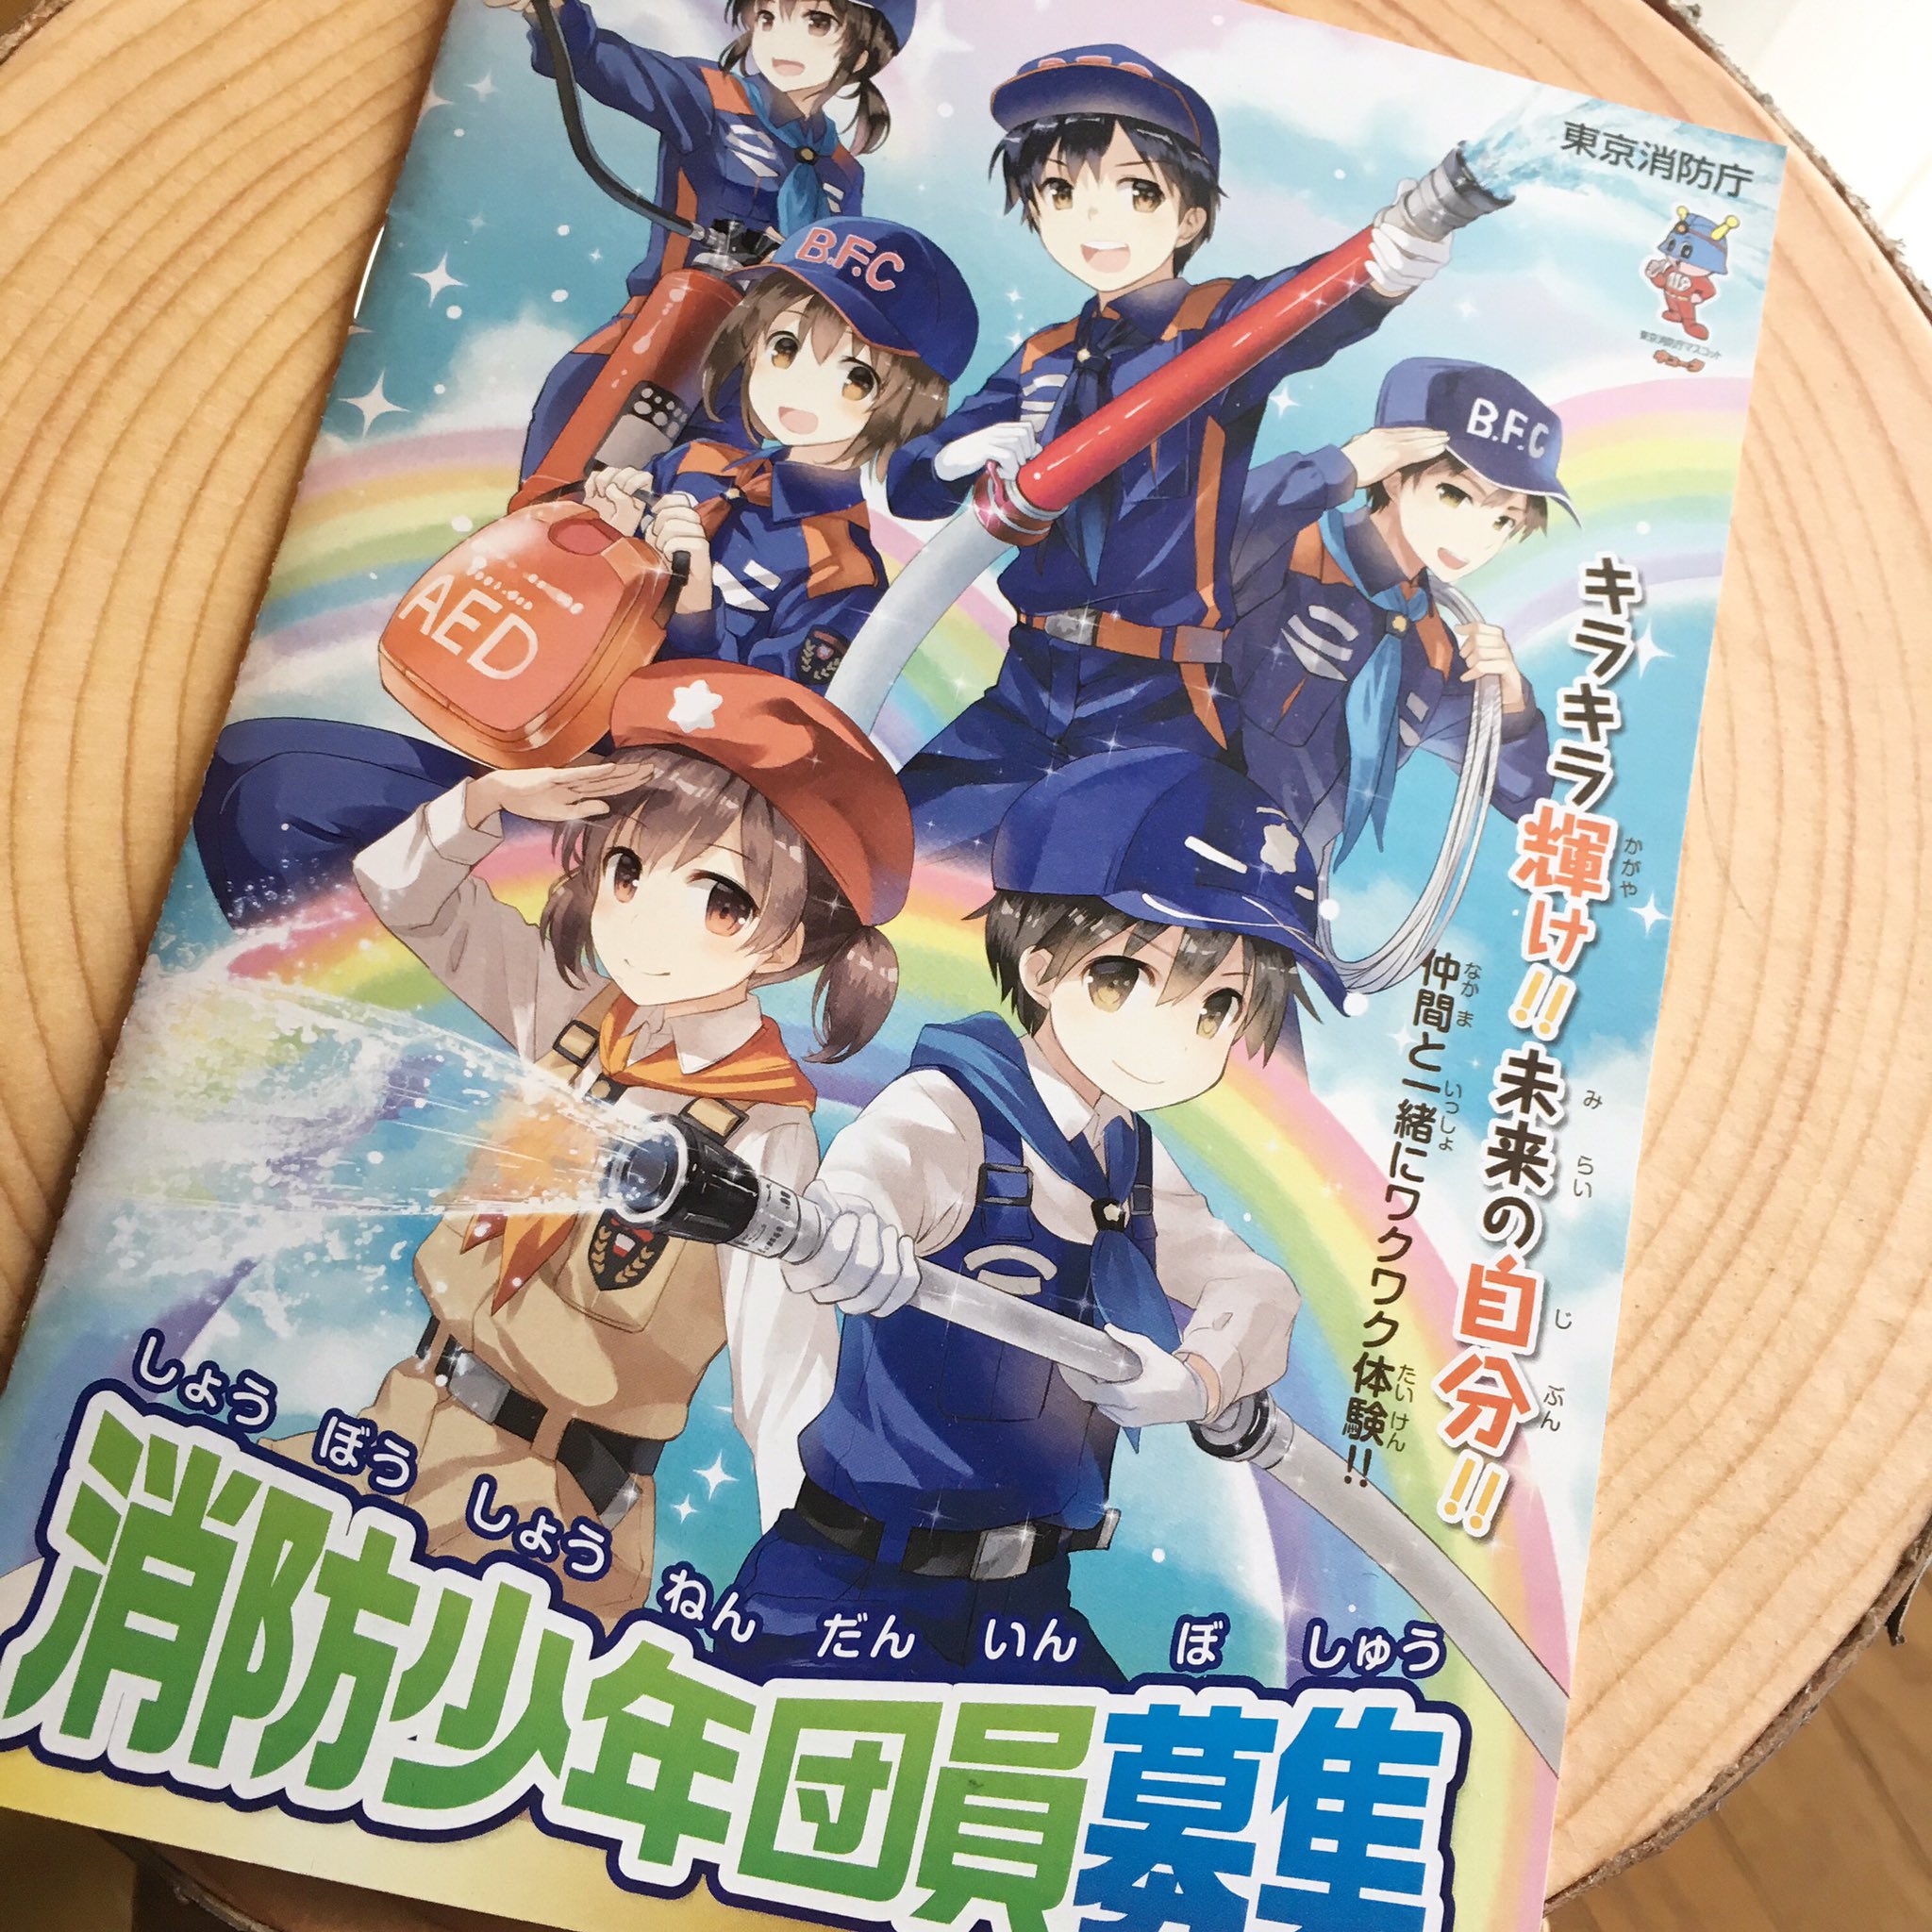 成瀬ちさと 新宿マルイmsm2 6 23 東京消防庁の消防少年団の募集ポスター 冊子のイラストを描かせていただきました 年始くらいから都内で配布 使用されているようです T Co Klxxdbnjzw Twitter